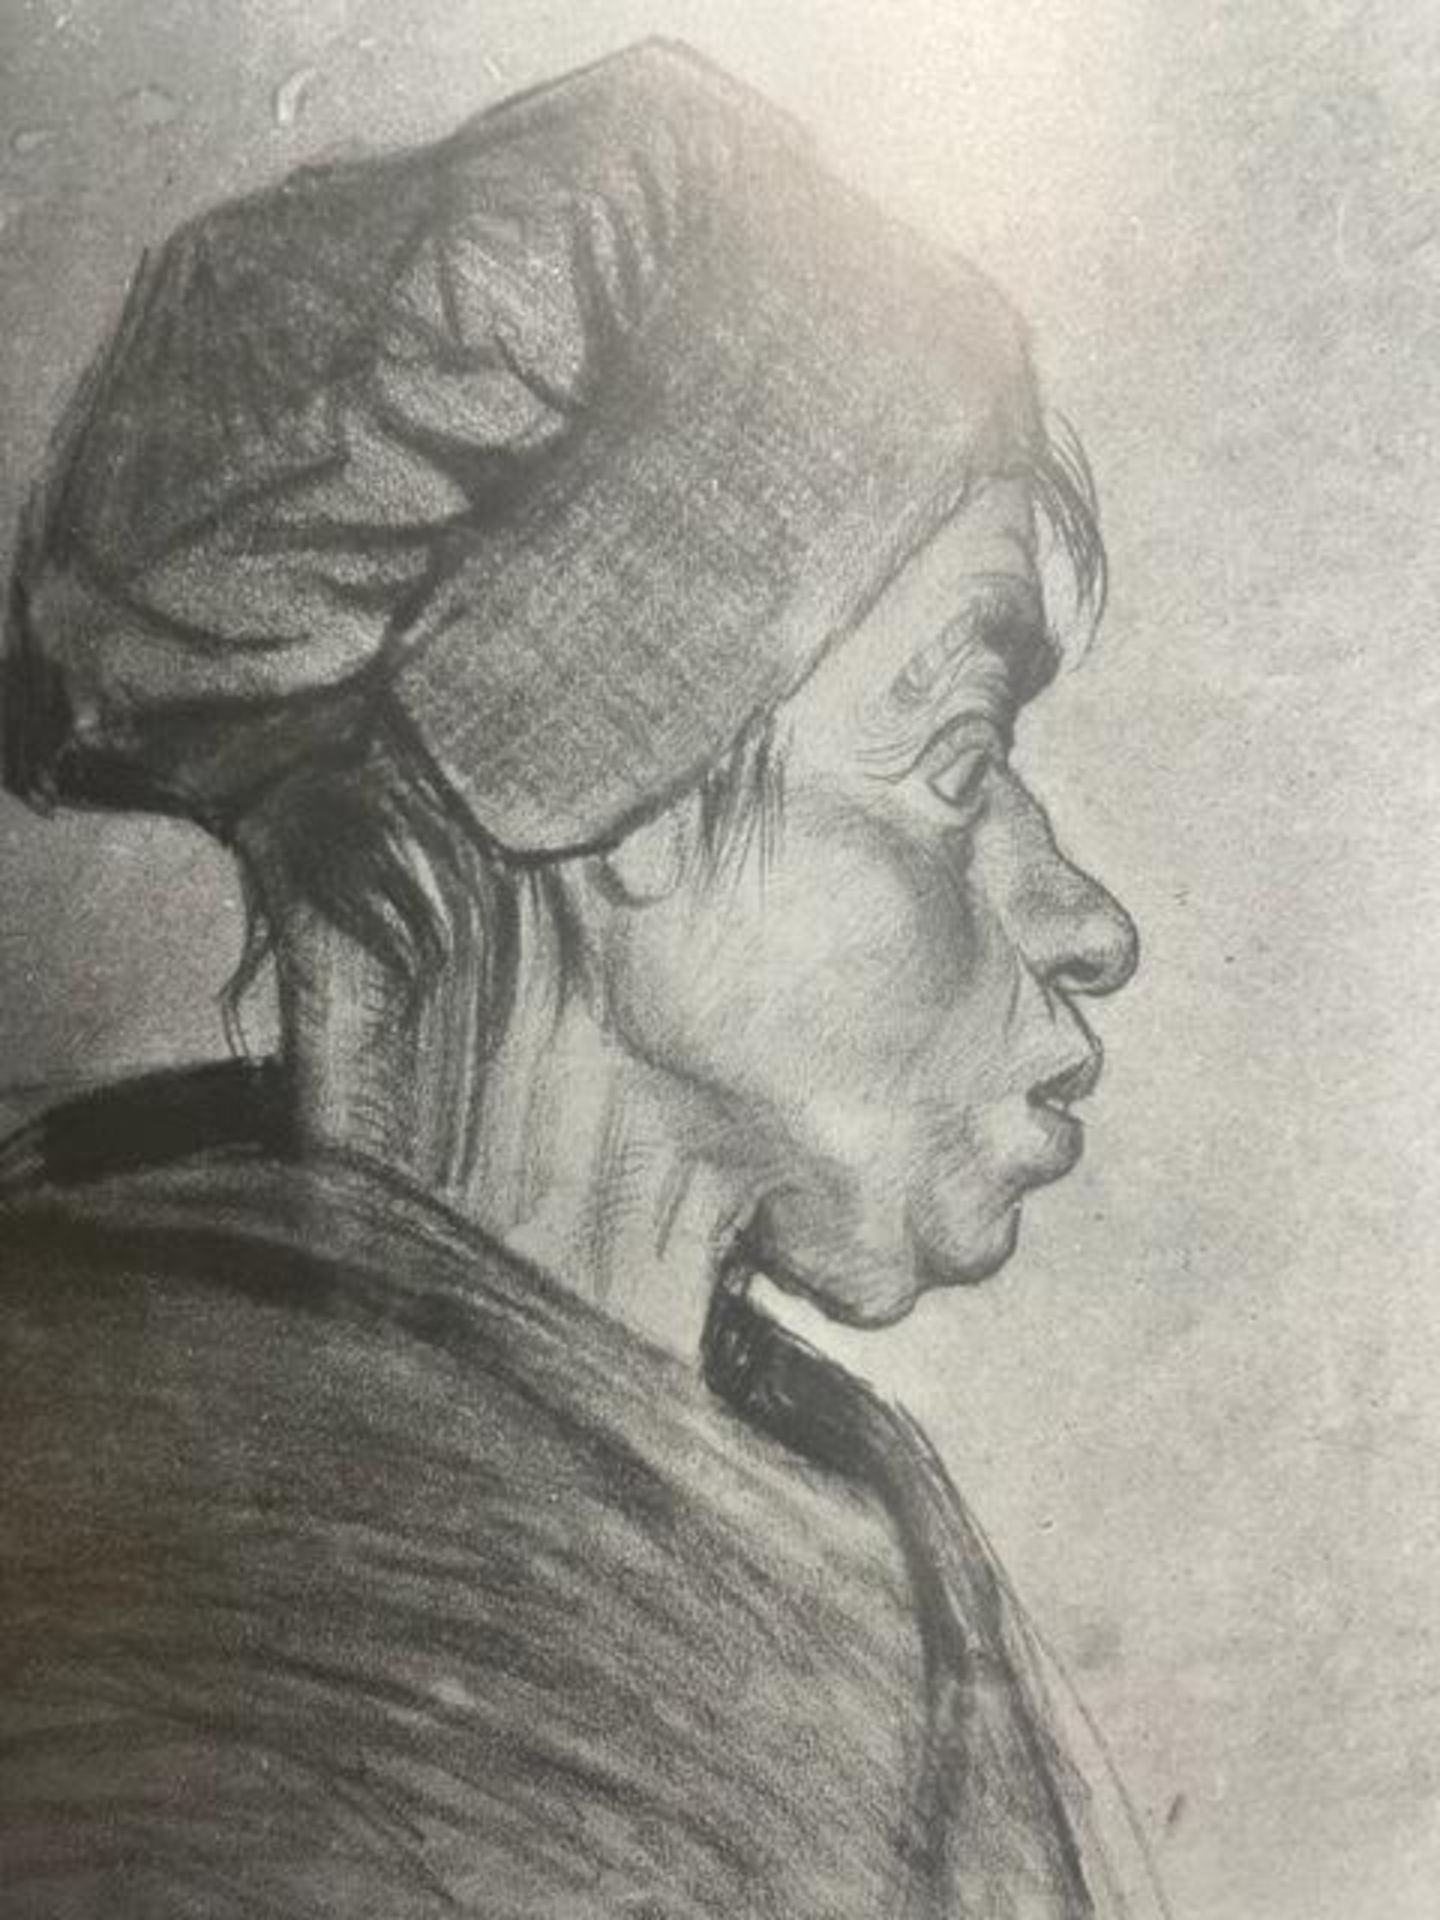 Vincent van Gogh "Peasant Woman" Print. - Image 2 of 6